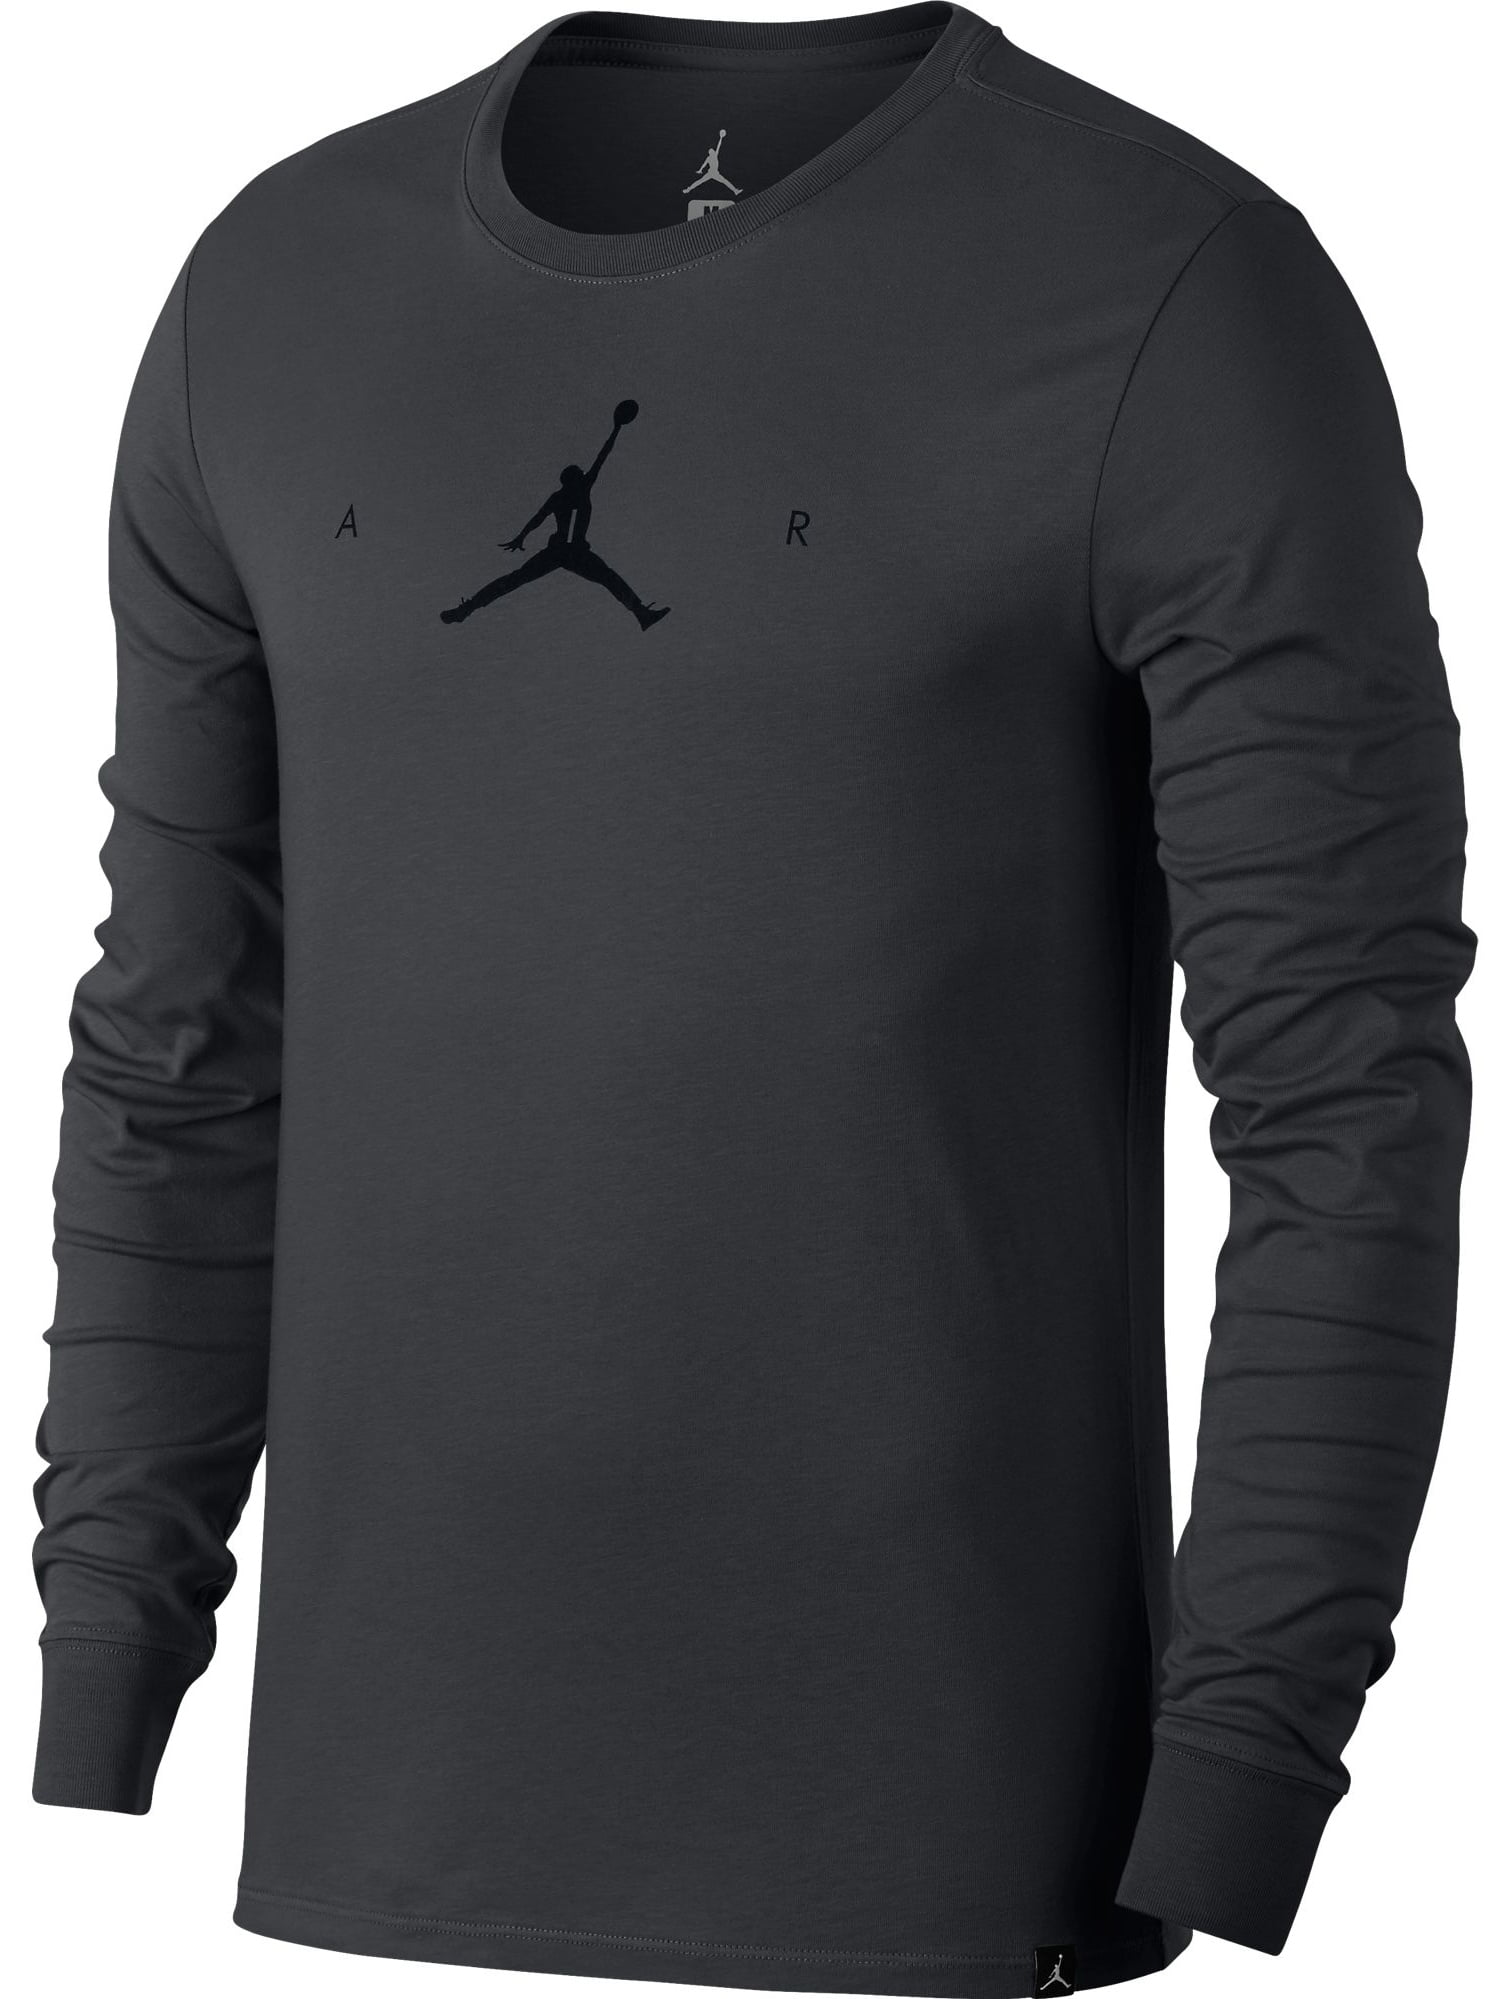 Jordan - Jordan Dri-Fit Air Jumpman Longsleeve Men's T-Shirt Grey/Black ...